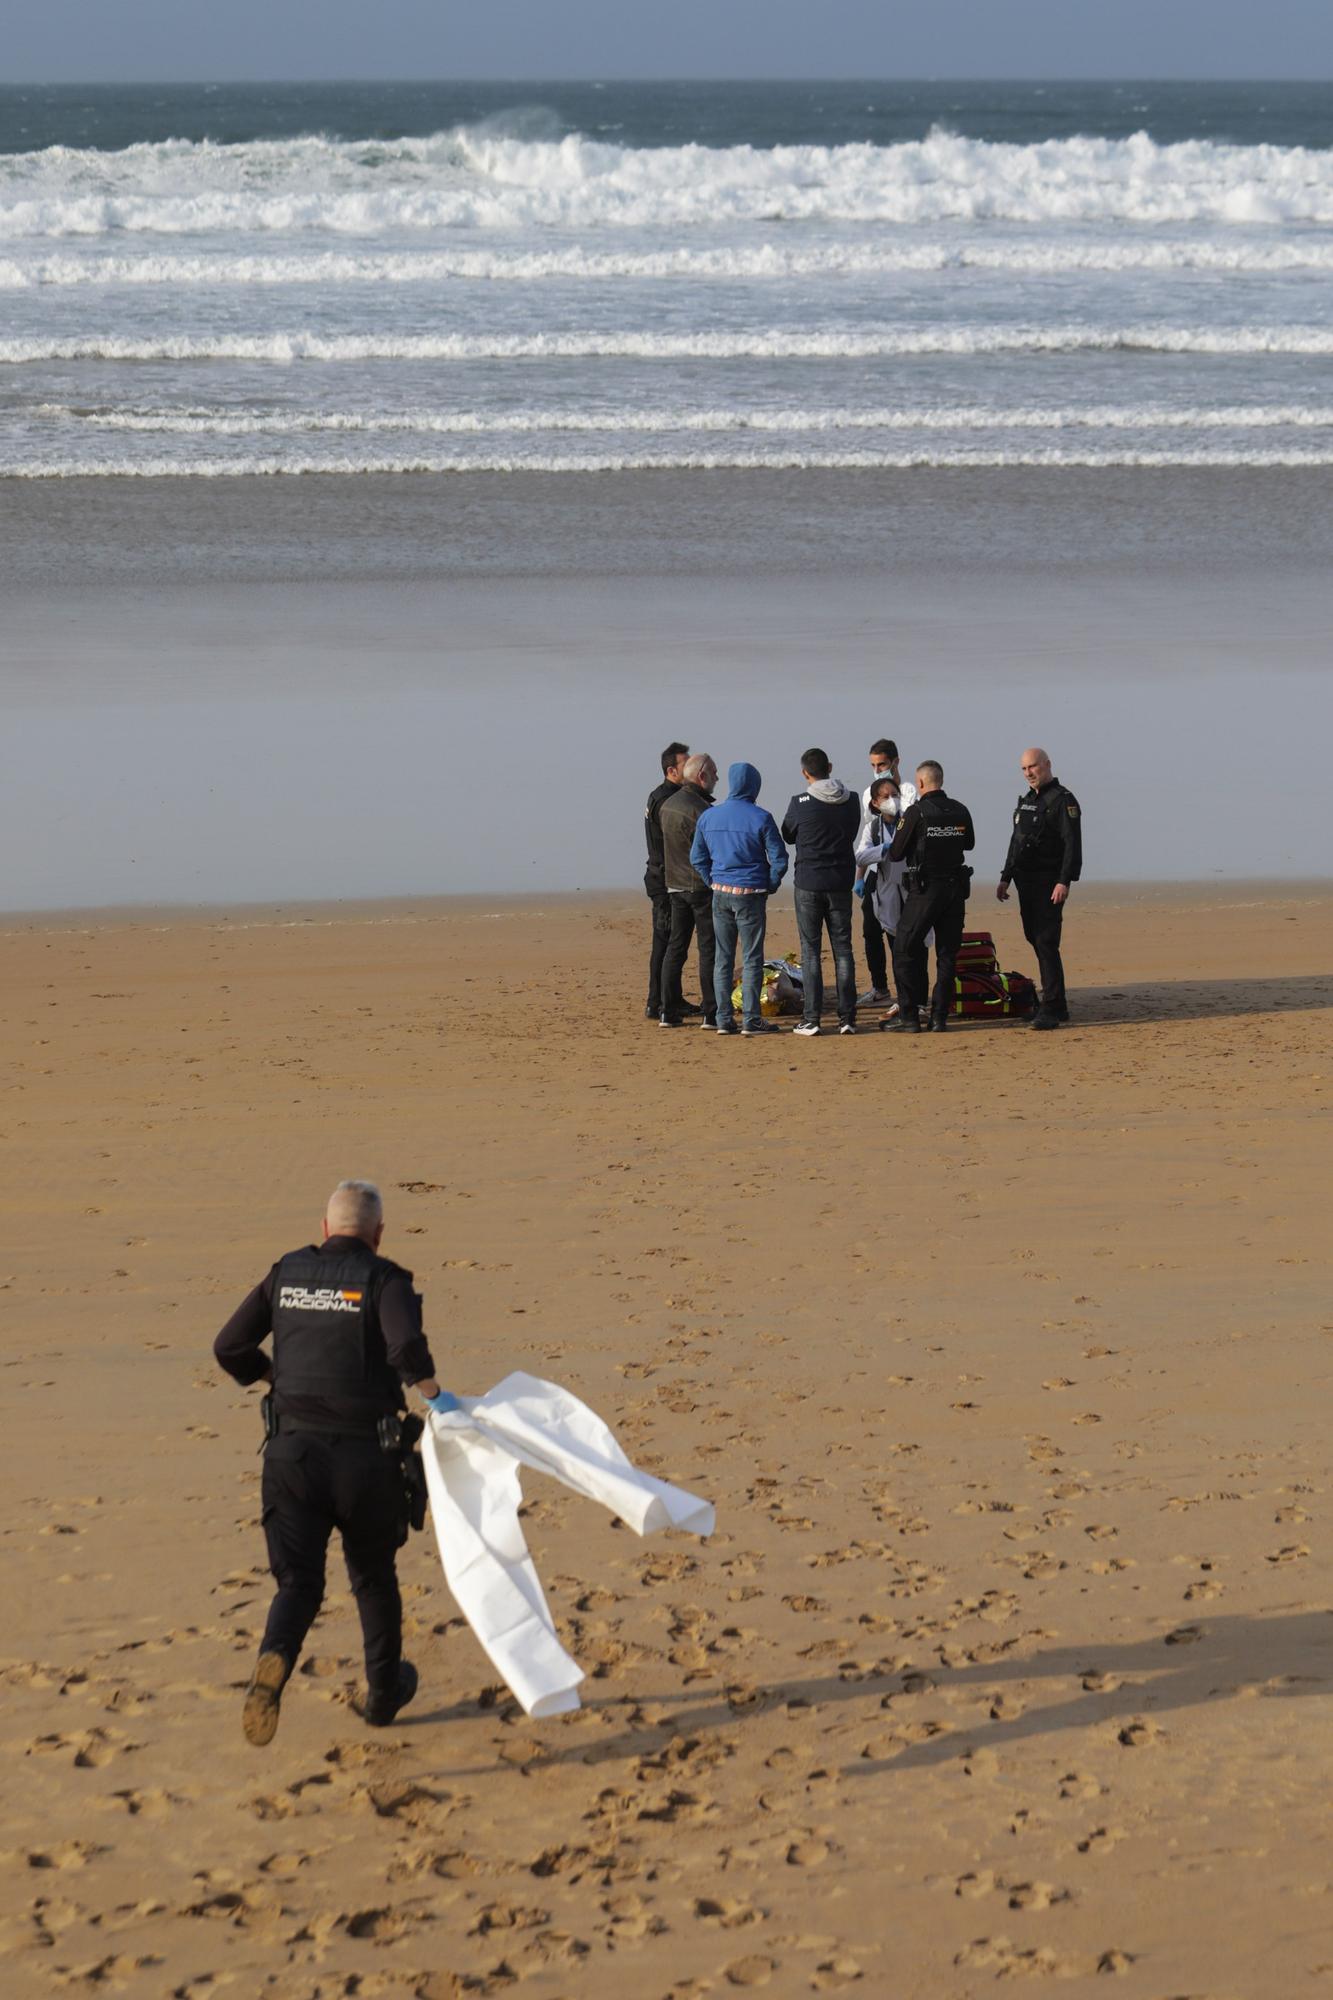 Hallan en Gijón el cadáver de un hombre flotando en el mar